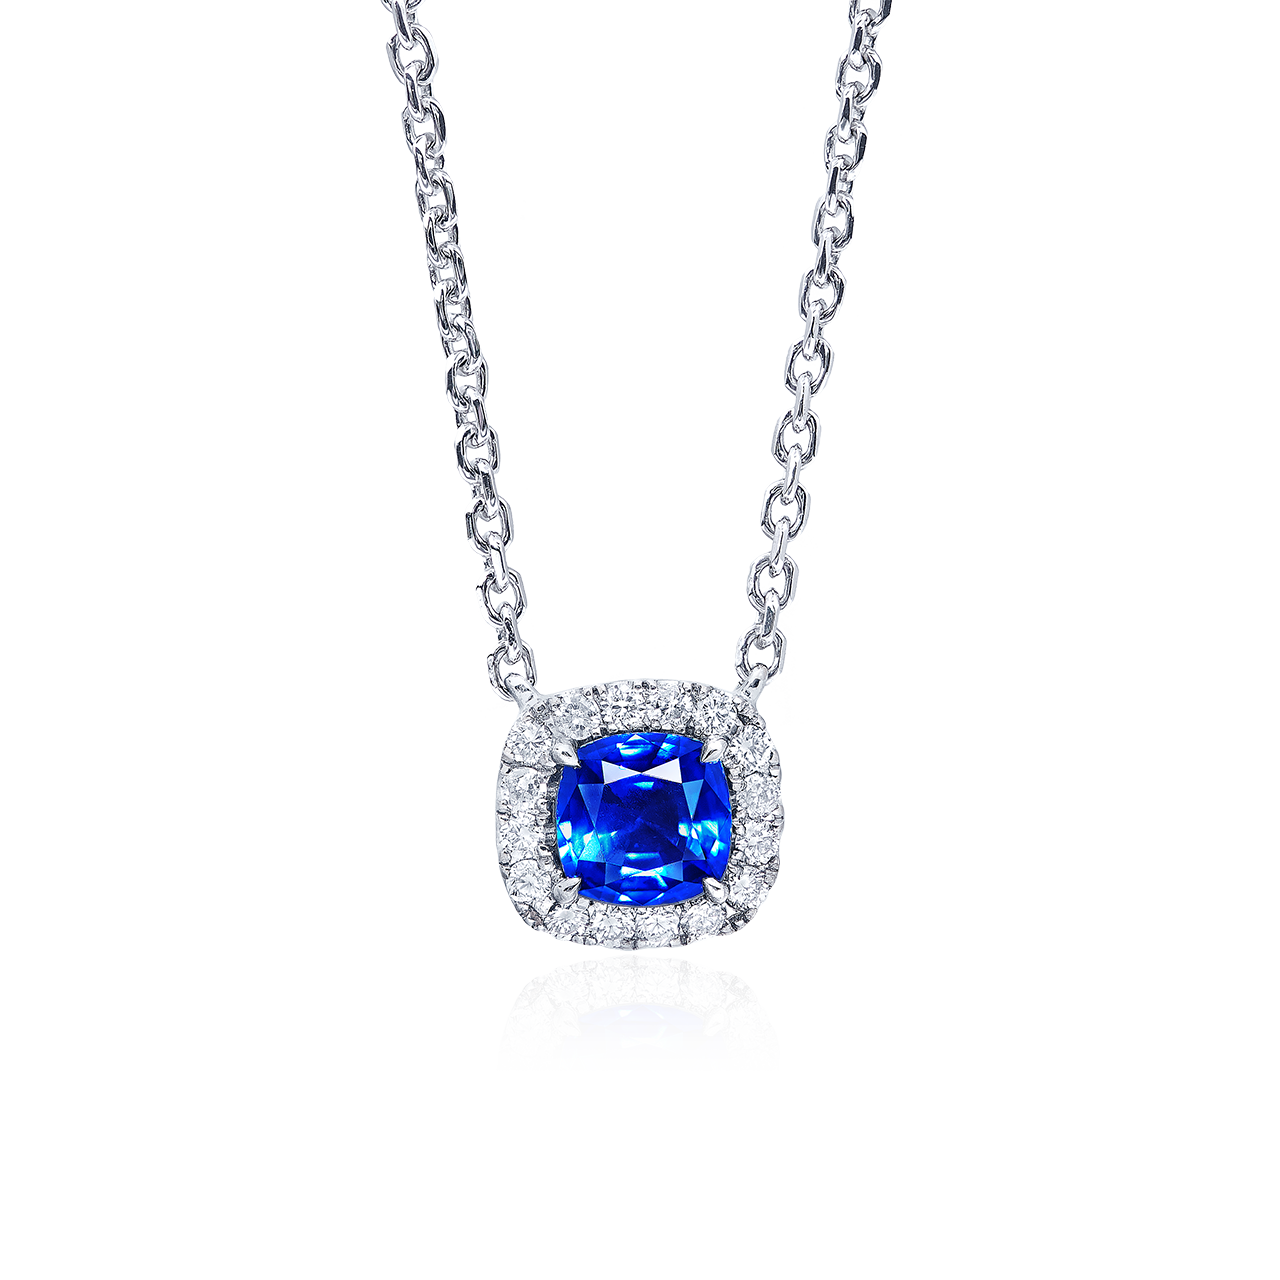 0.59克拉 斯里蘭卡無燒皇家藍藍寶石墜鍊
Sri Lanka Royal Blue Sapphire and 
Diamond Pendant Necklace